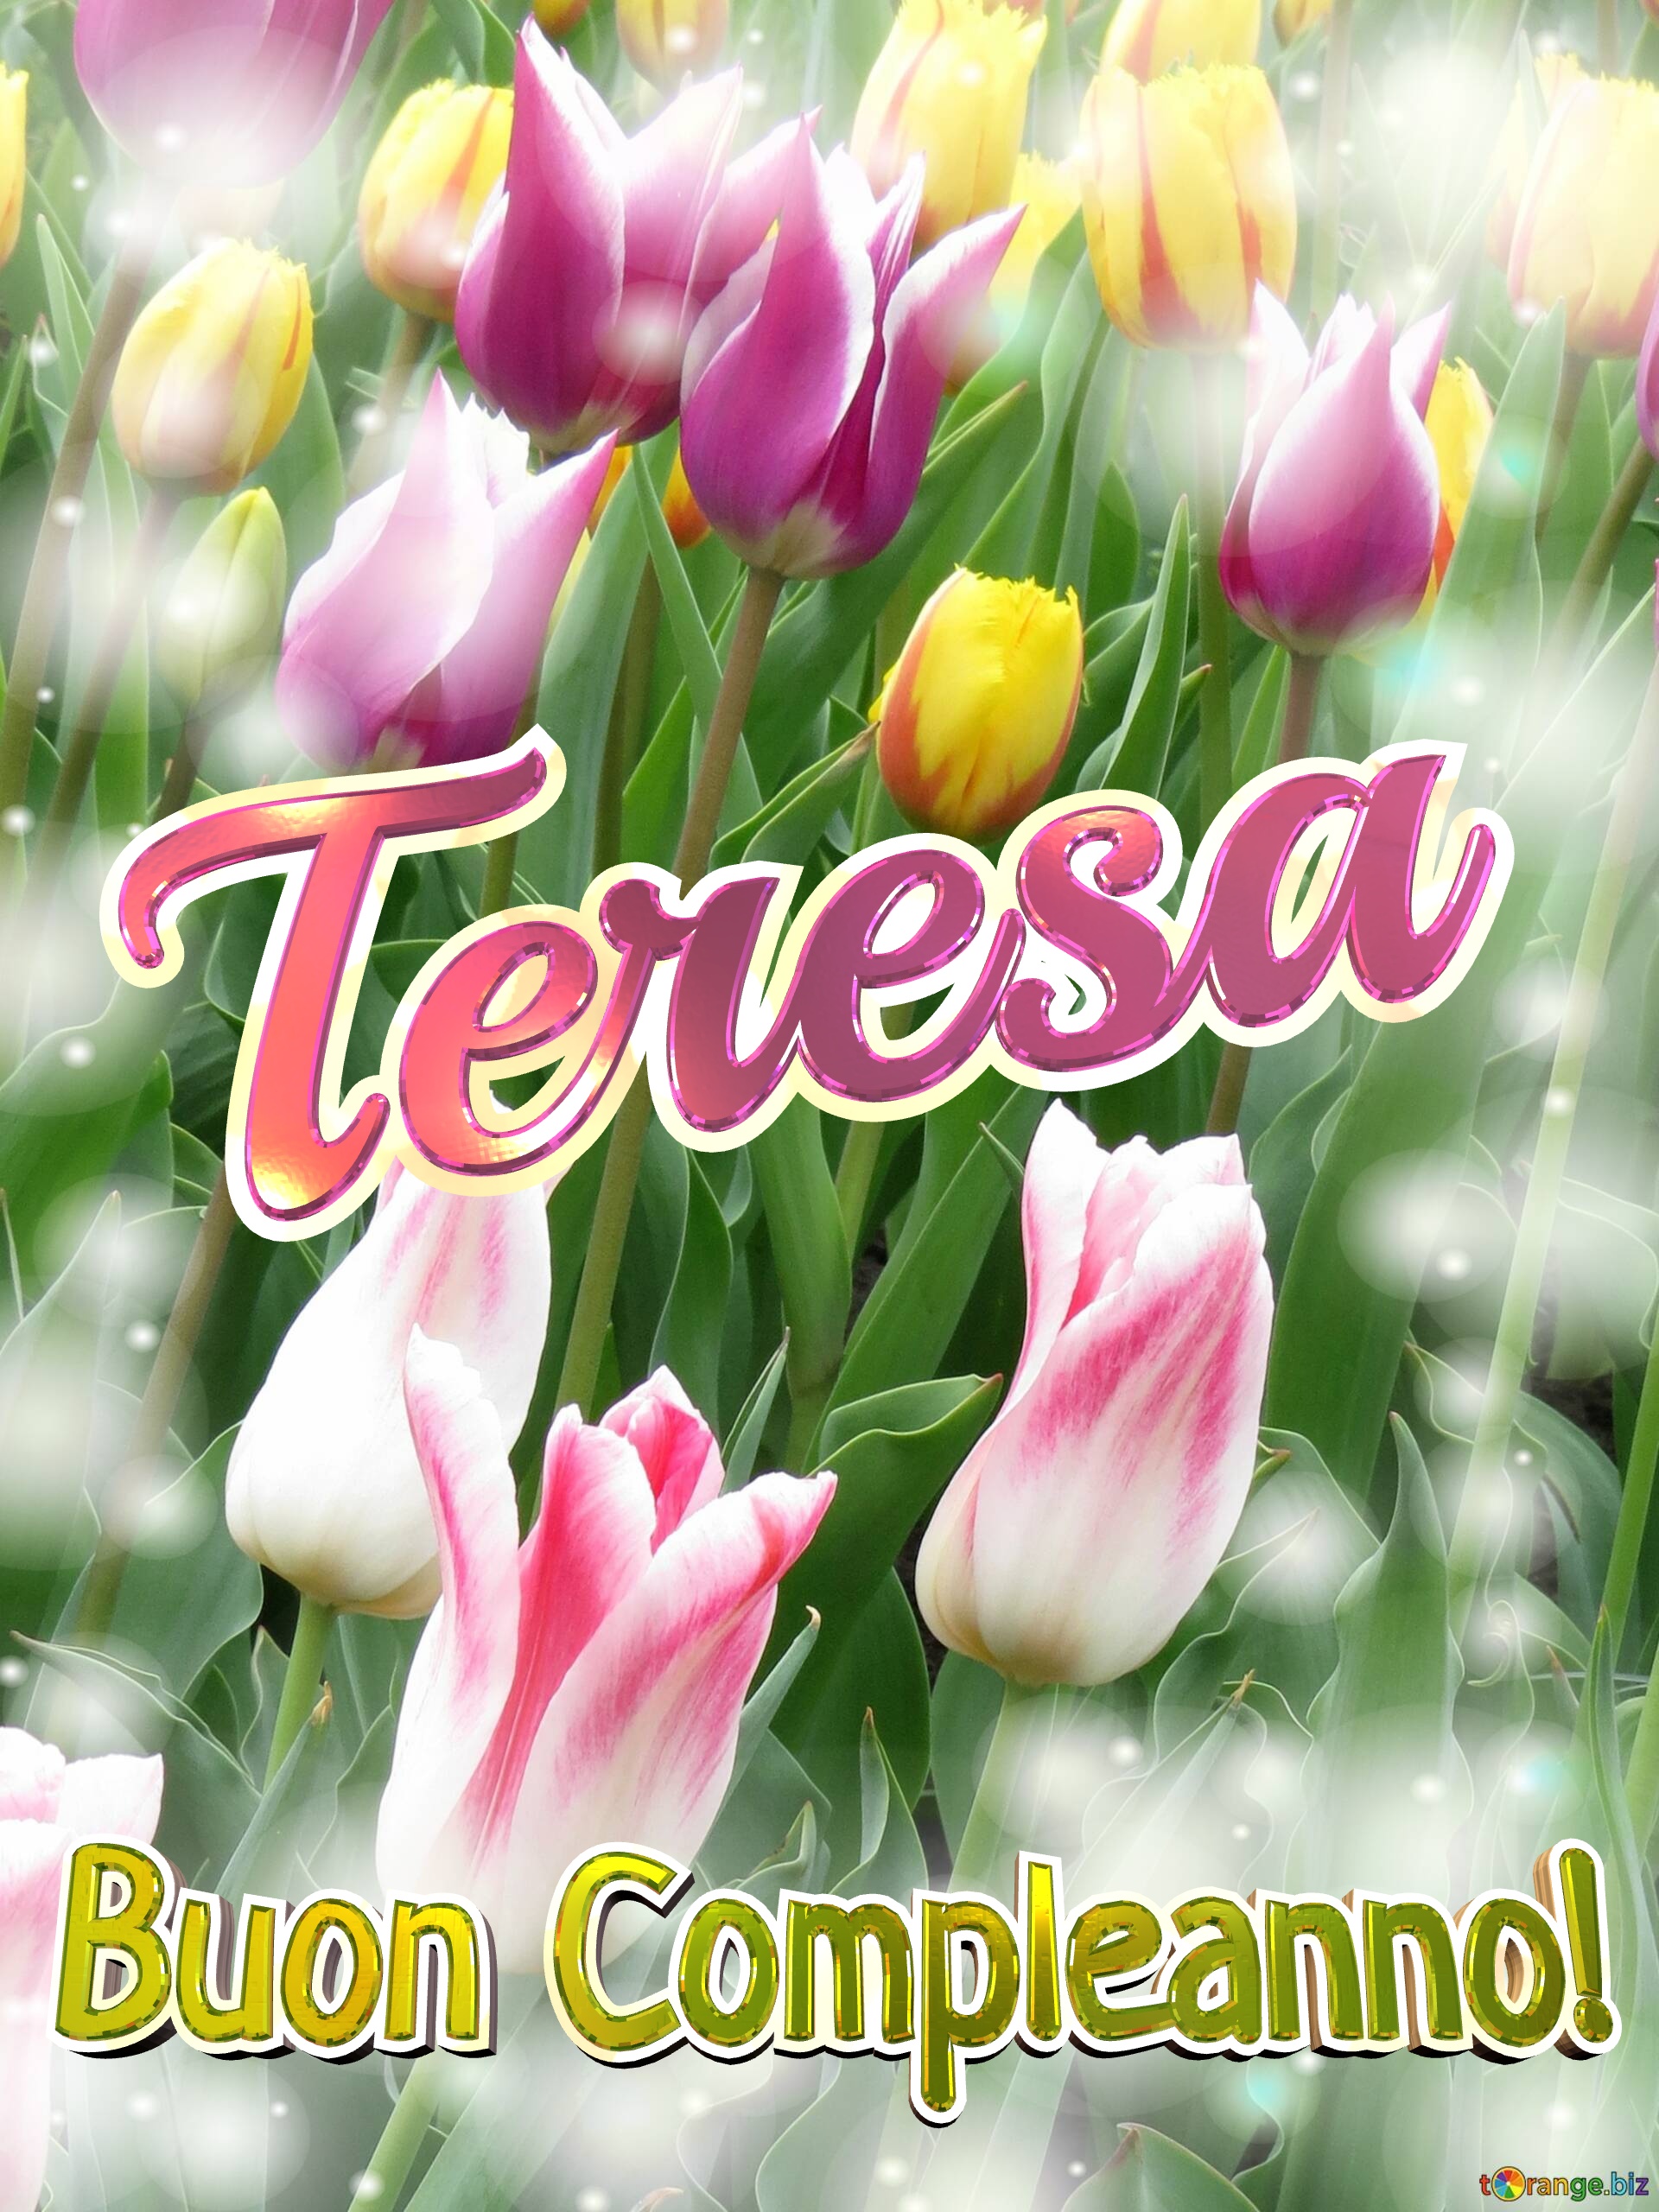 Buon Compleanno! Teresa  La bellezza dei tulipani è un richiamo alla bellezza della vita, goditi ogni istante della tua vita. №0